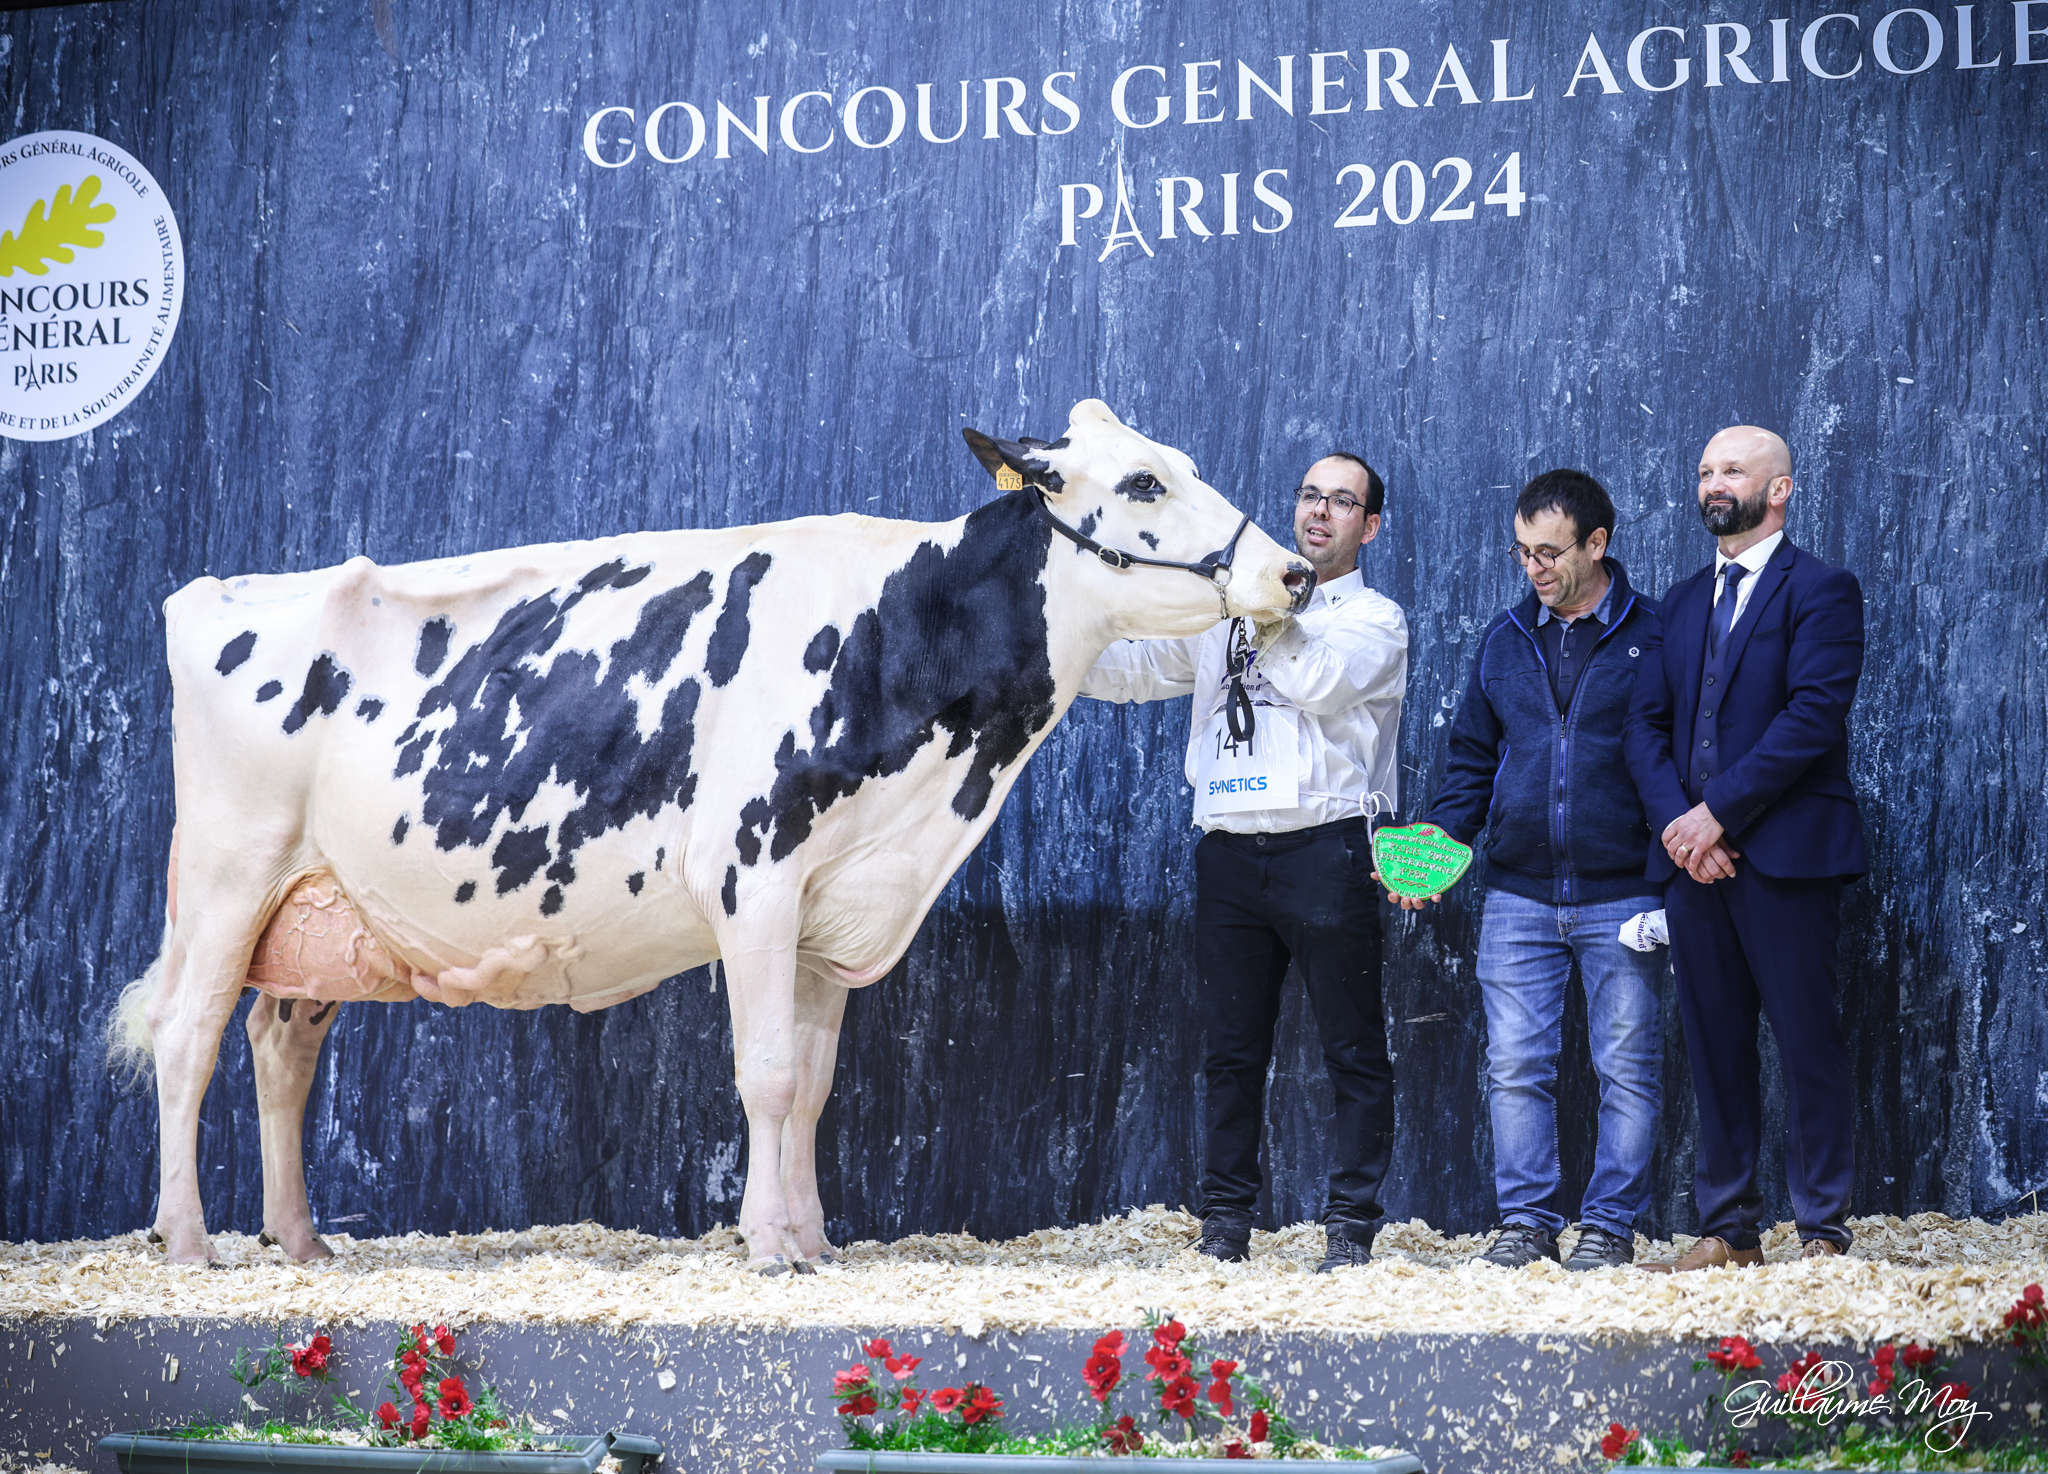 Concours général agricole : Le GAEC de Lespinas remporte deux titres !